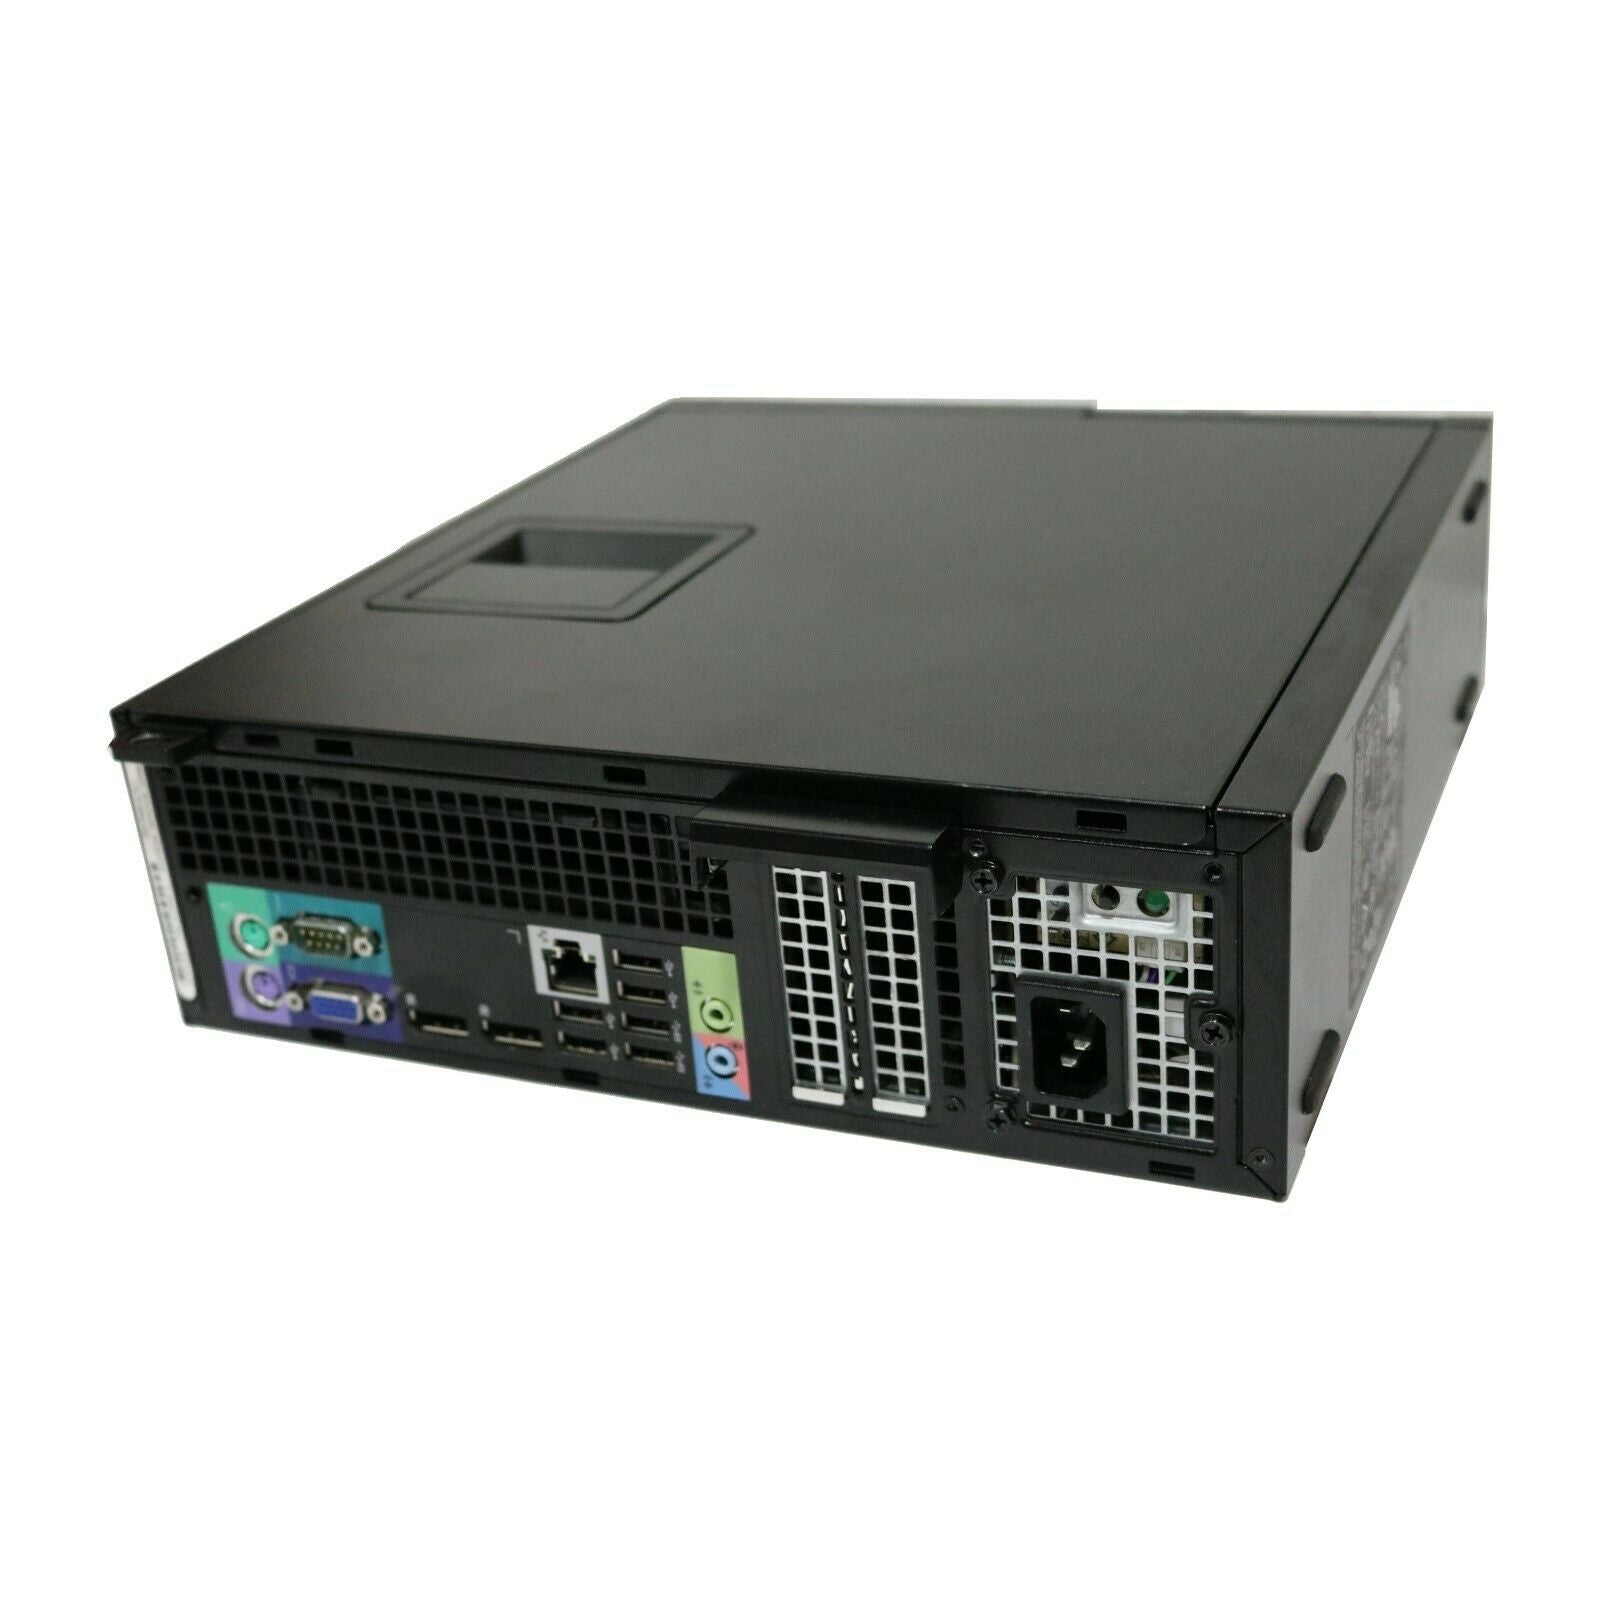 Dell OptiPlex 9010 SFF PC i7-3770 3.40GHz 8GB RAM 500GB HDD DVD+RW WIN 10 PRO 